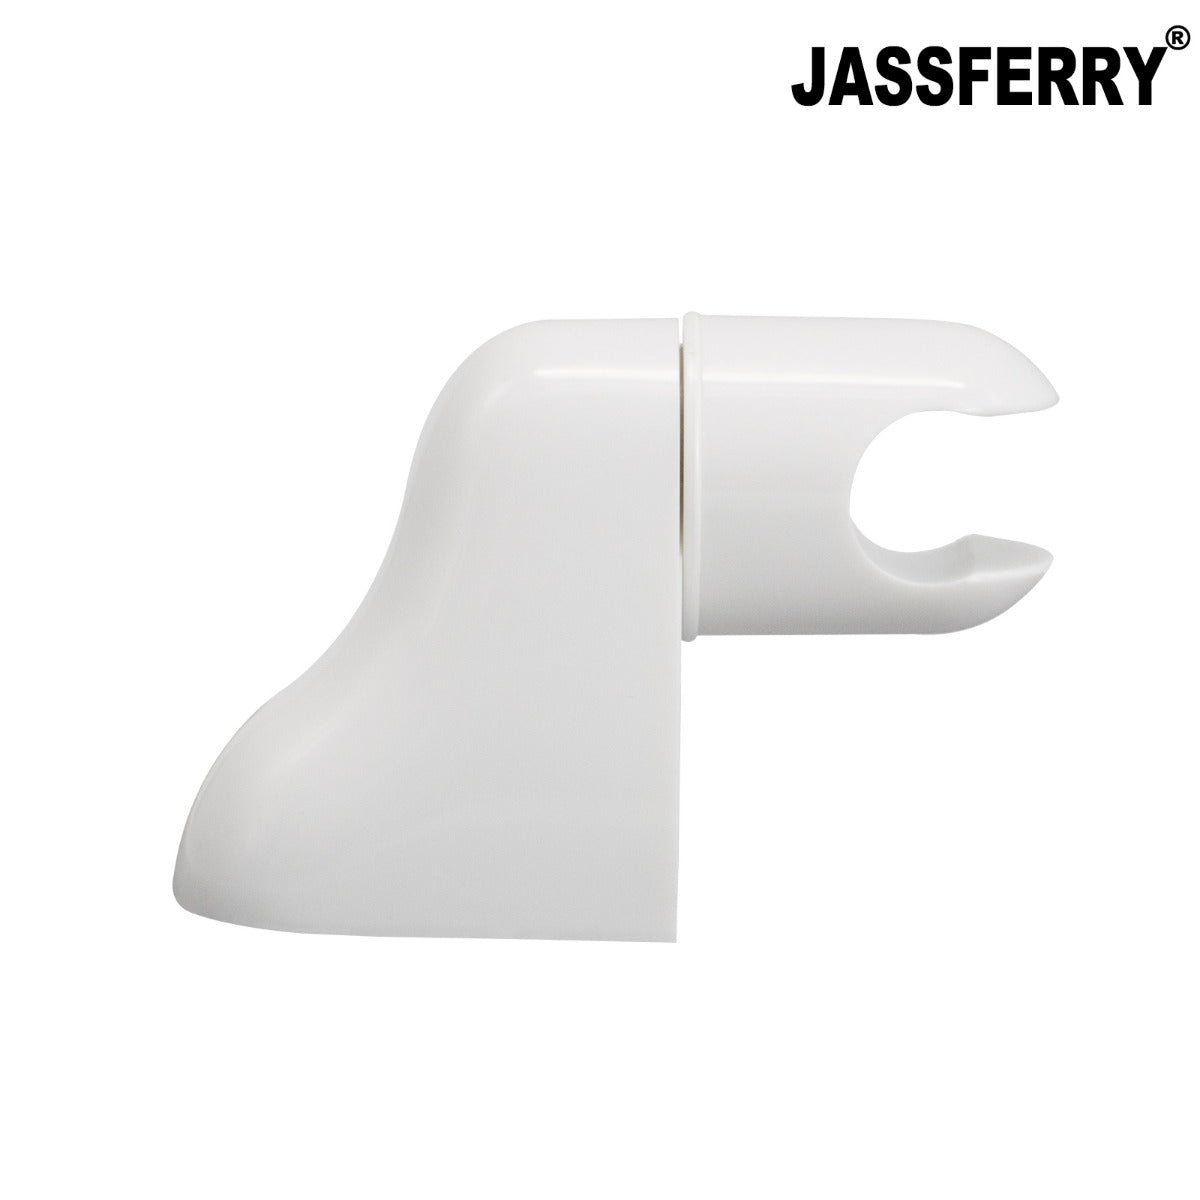 JassferryJASSFERRY Replacement Adjustable Wall Bracket Shower Head Hose Holder WhiteShower Heads